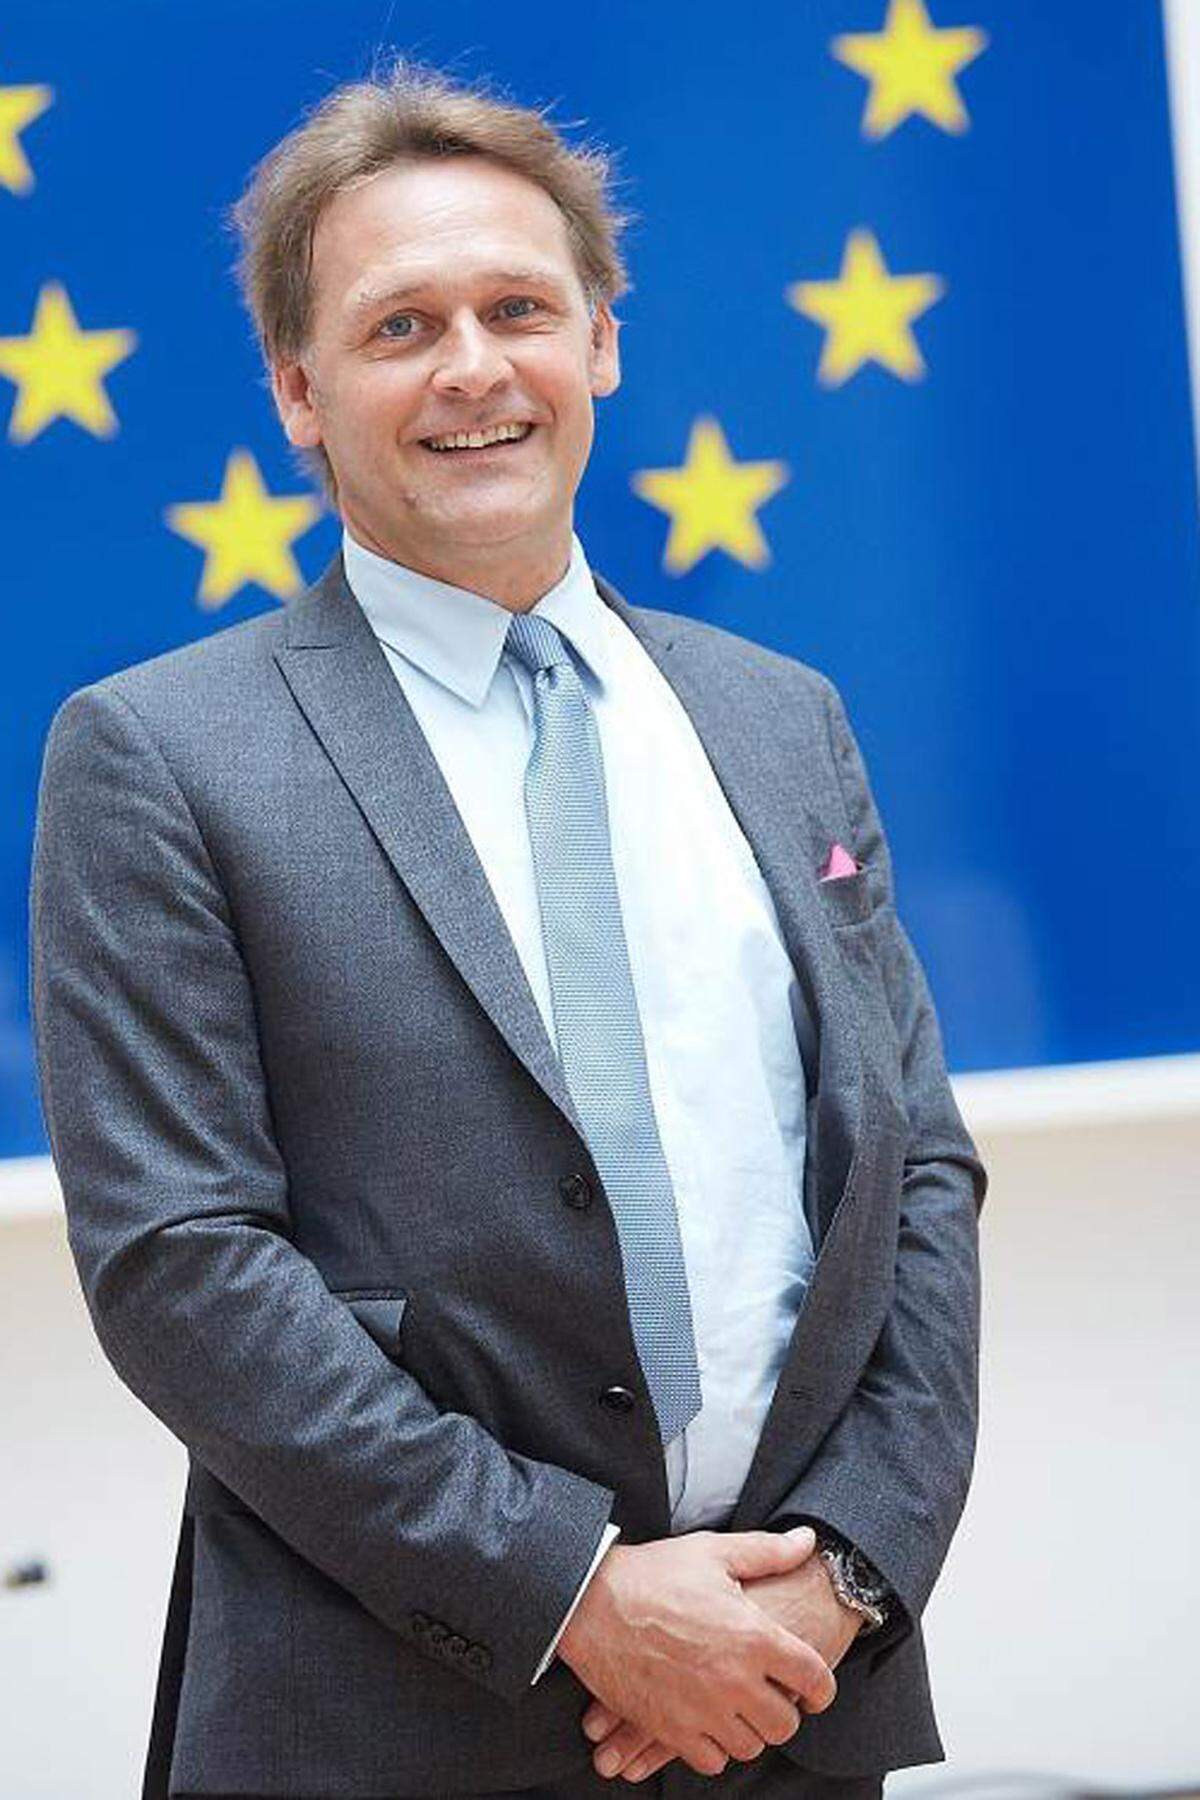 Der studierte Jurist Johann Sollgruber warb bereits als Sekretär des EU-Botschafters für den Beitritt Österreichs zur EU und war in jungen Jahren in Brüssel und bei den EU-Beitrittsverhandlungen Österreichs in den 1990er Jahren beteiligt. 1995-96 baute er das EU-Regionalmanagement Obersteiermark auf, um dann in die EU-Kommission nach Brüssel zu wechseln.